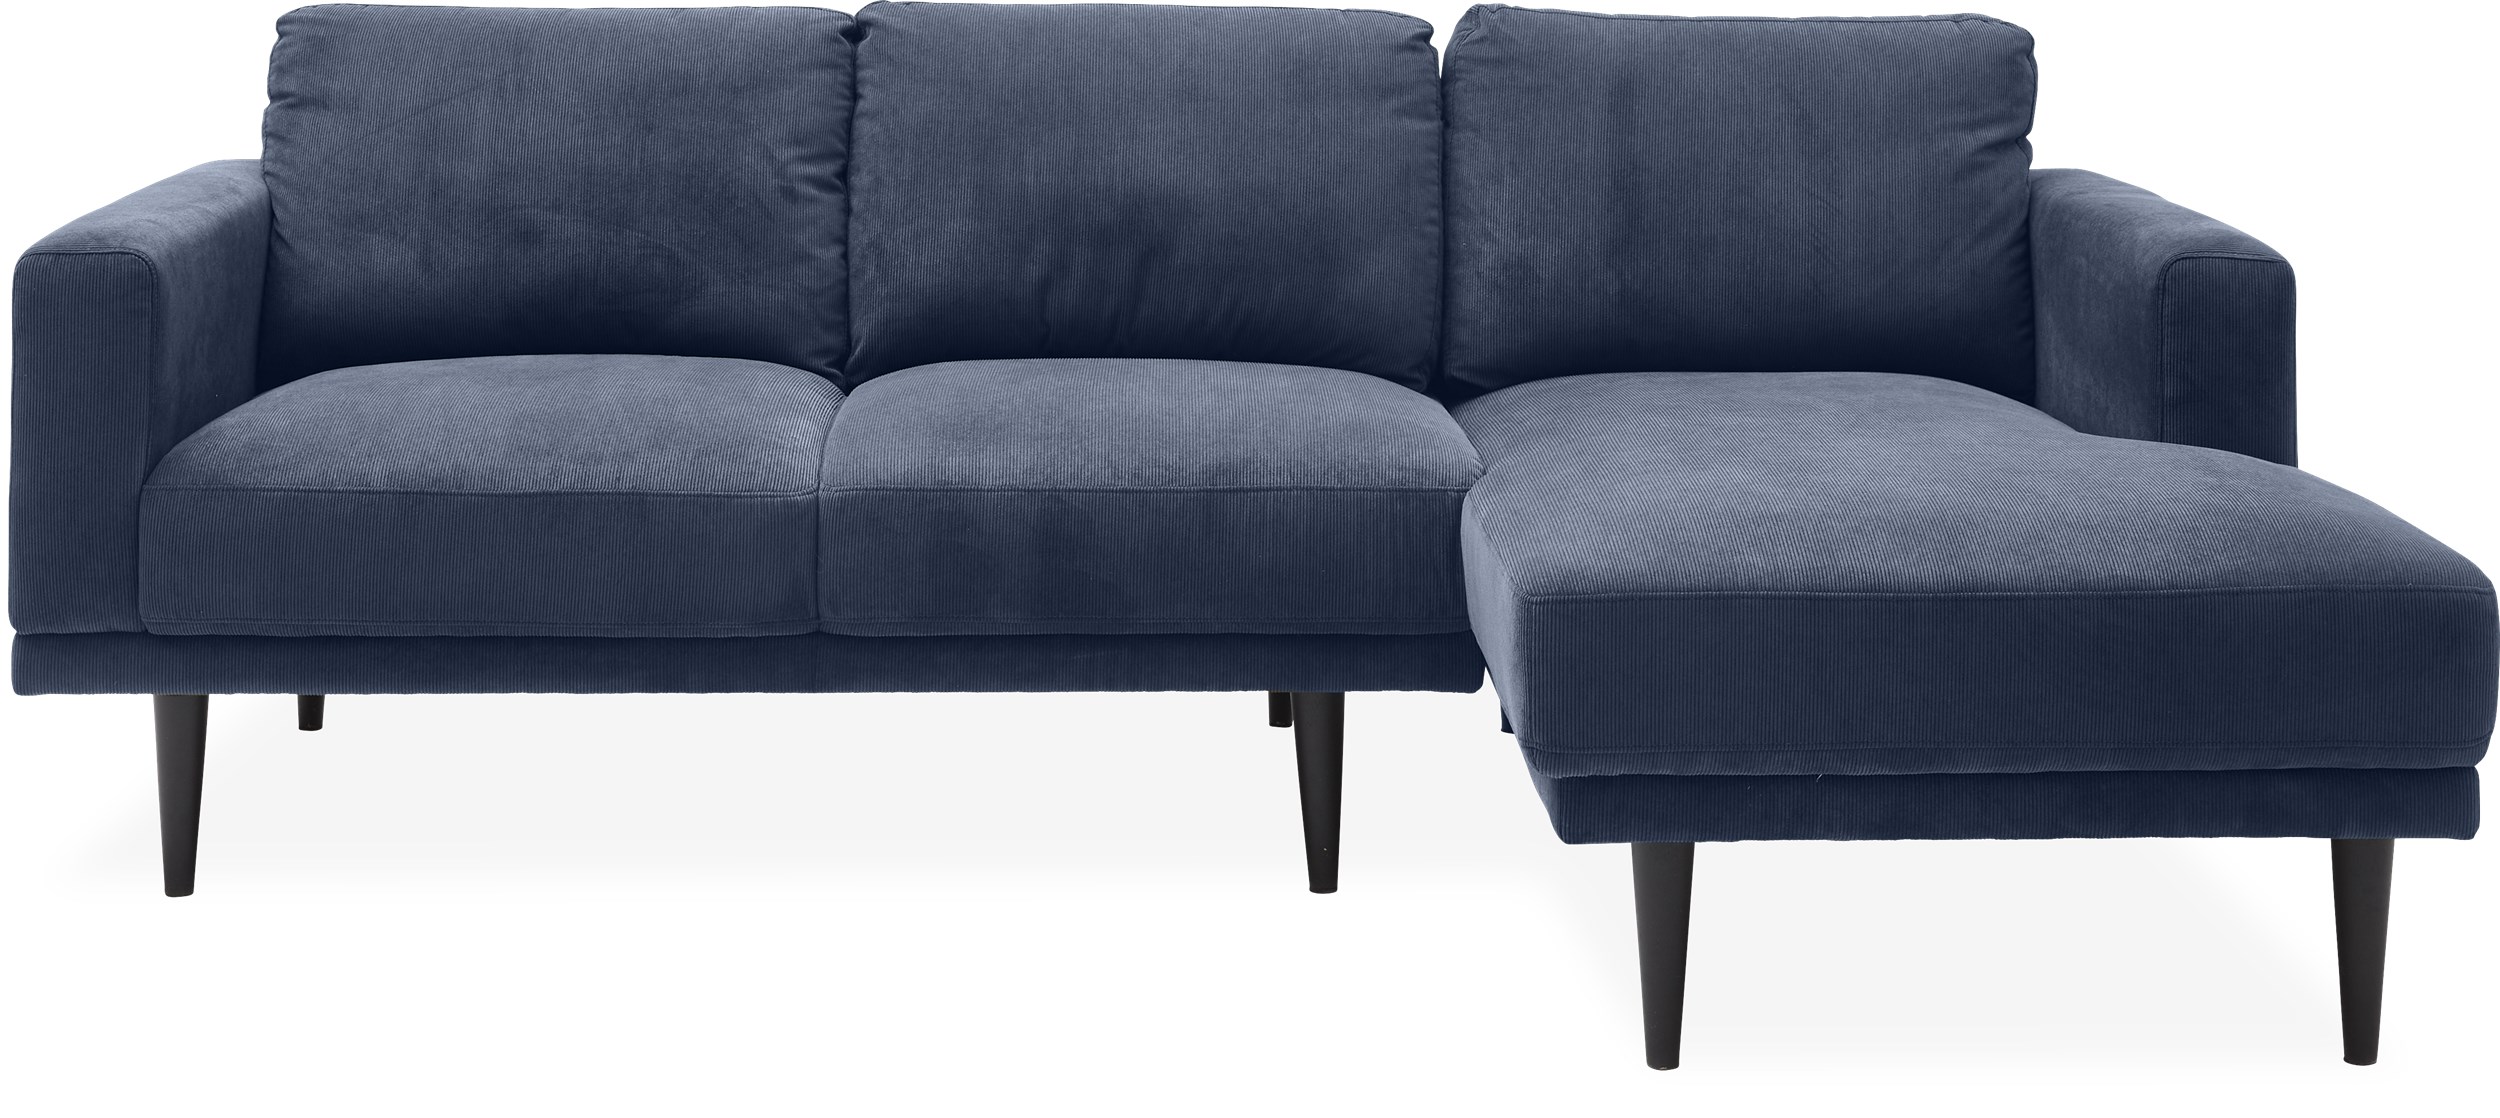 Mexico Sofa med chaiselong - Wave 220 Royal blue stof og ben i sortlakeret gummitræ